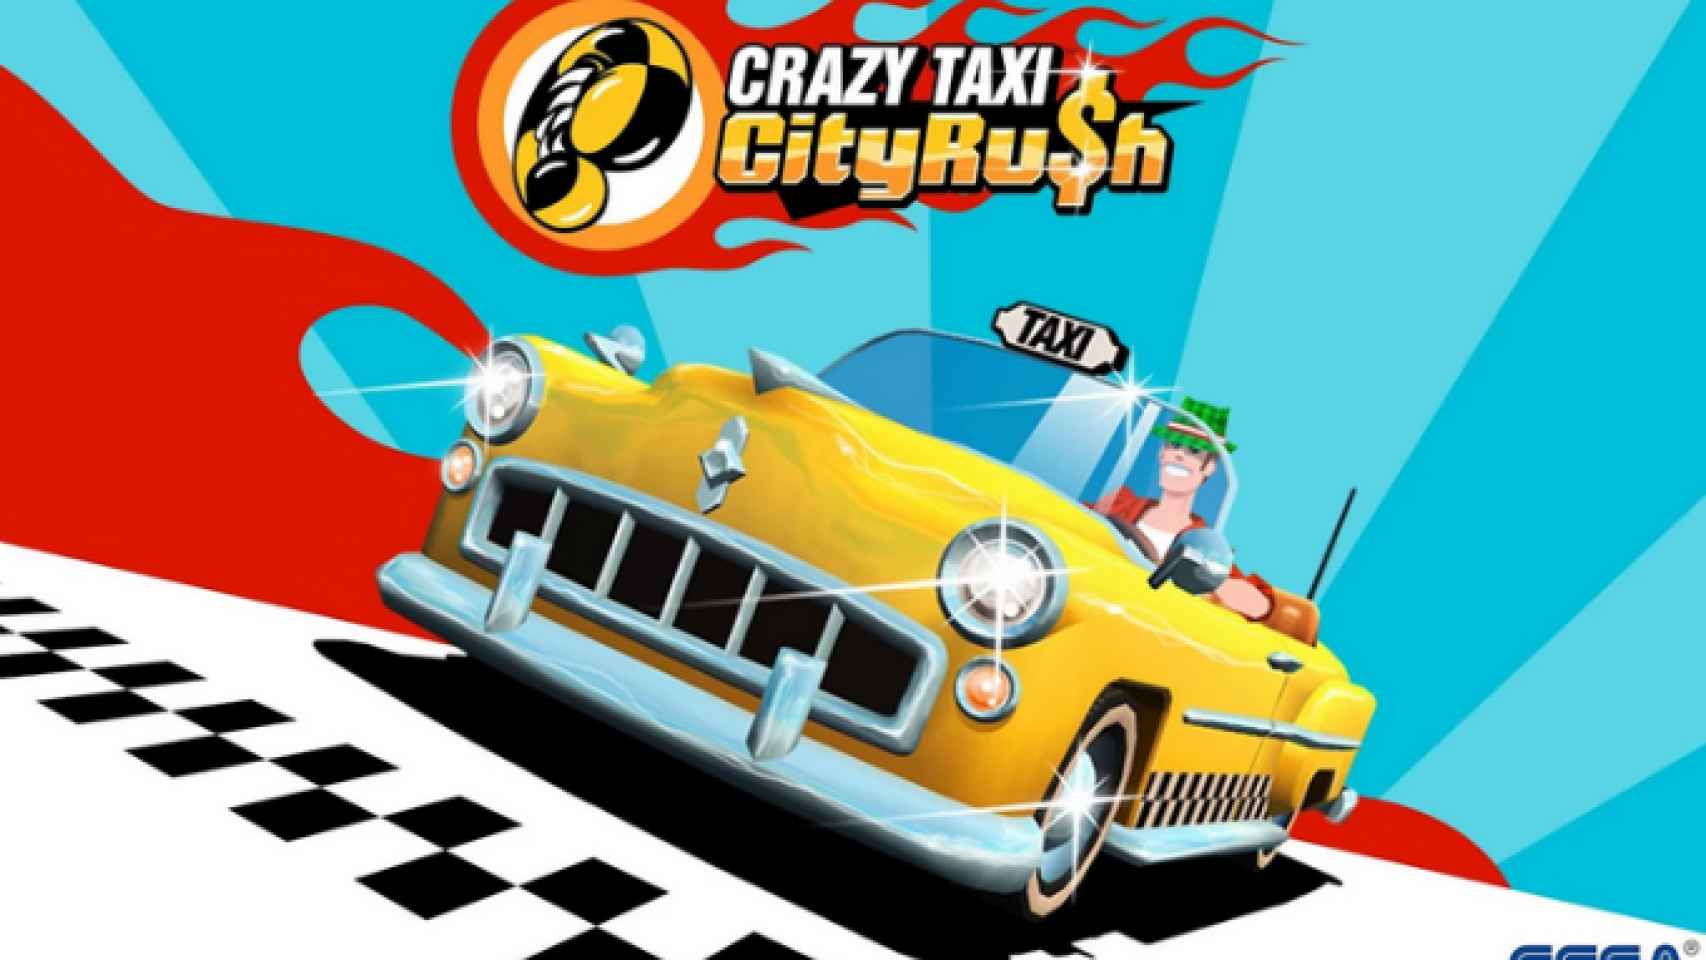 Crazy Taxi City Rush, una nueva edición con los taxistas más locos llega a Android